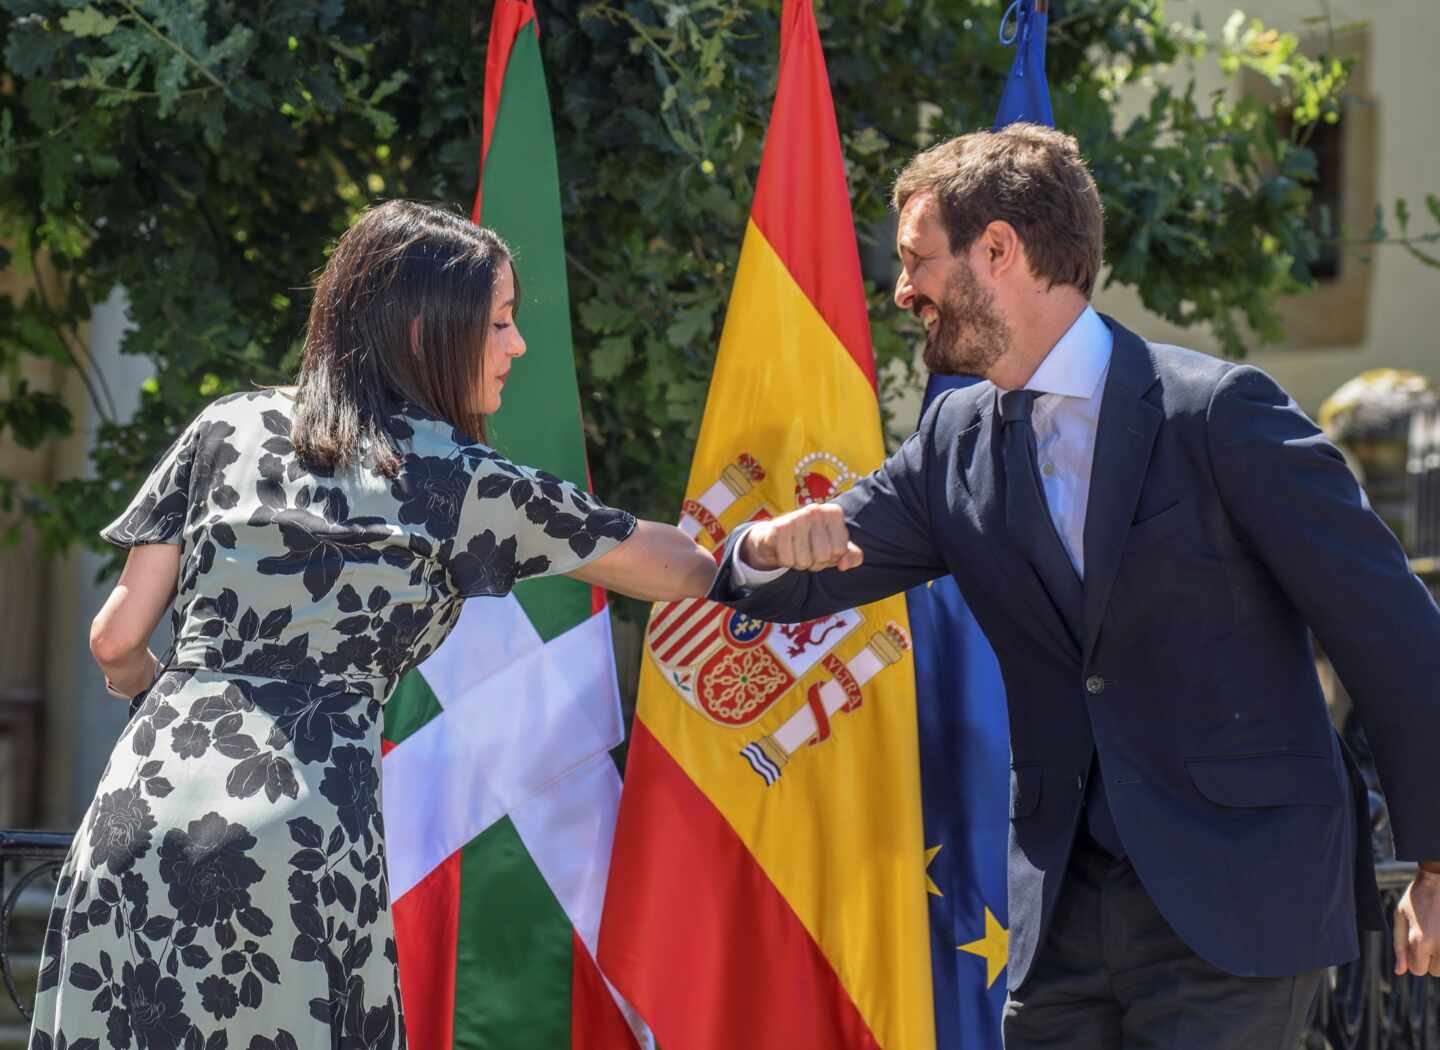 El PP advierte a Ciudadanos: si pacta con Sánchez no habrá alianza en Cataluña